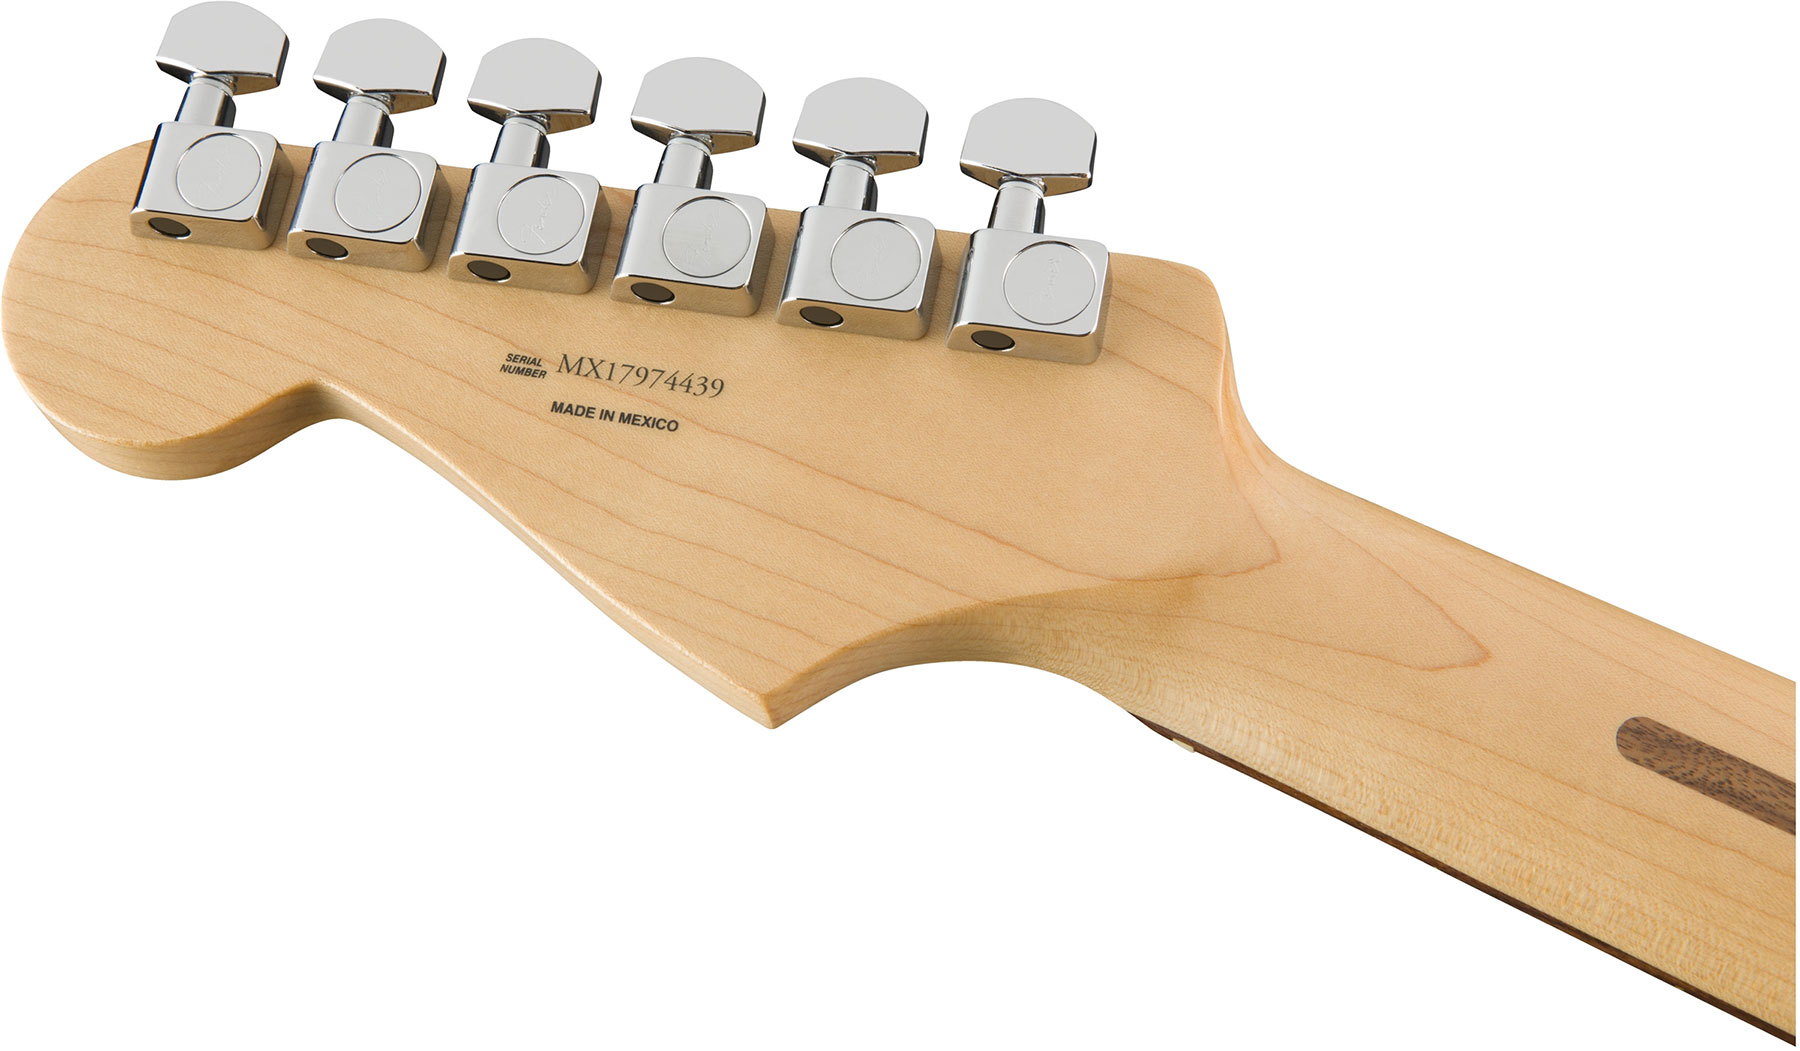 Fender Strat Player Mex Sss Pf - Polar White - E-Gitarre in Str-Form - Variation 4